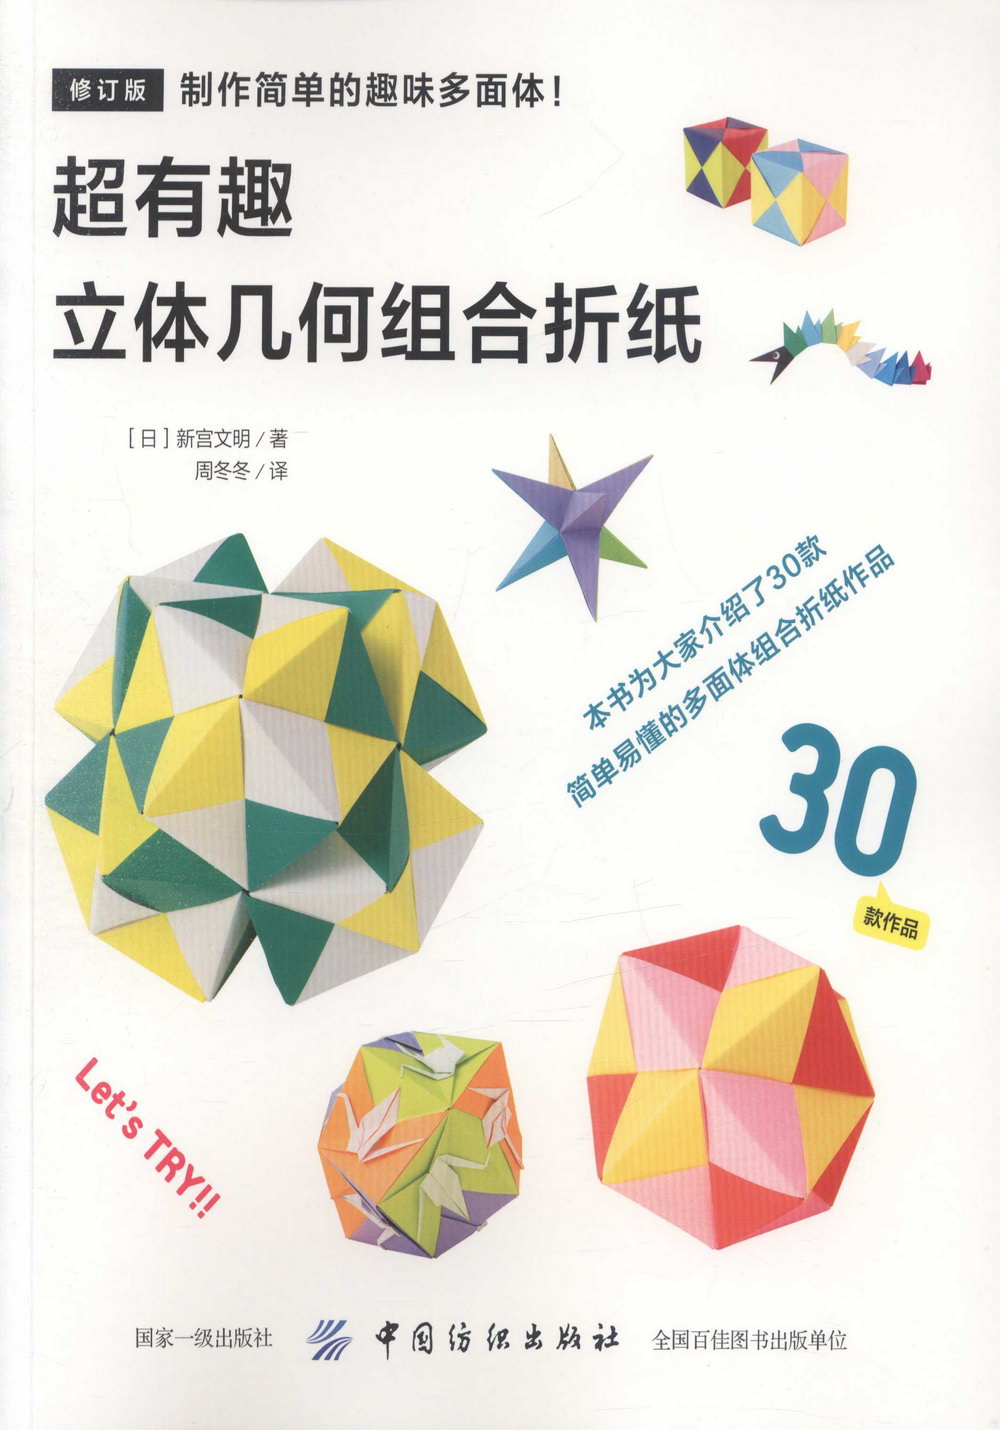 超有趣立體幾何組合摺紙